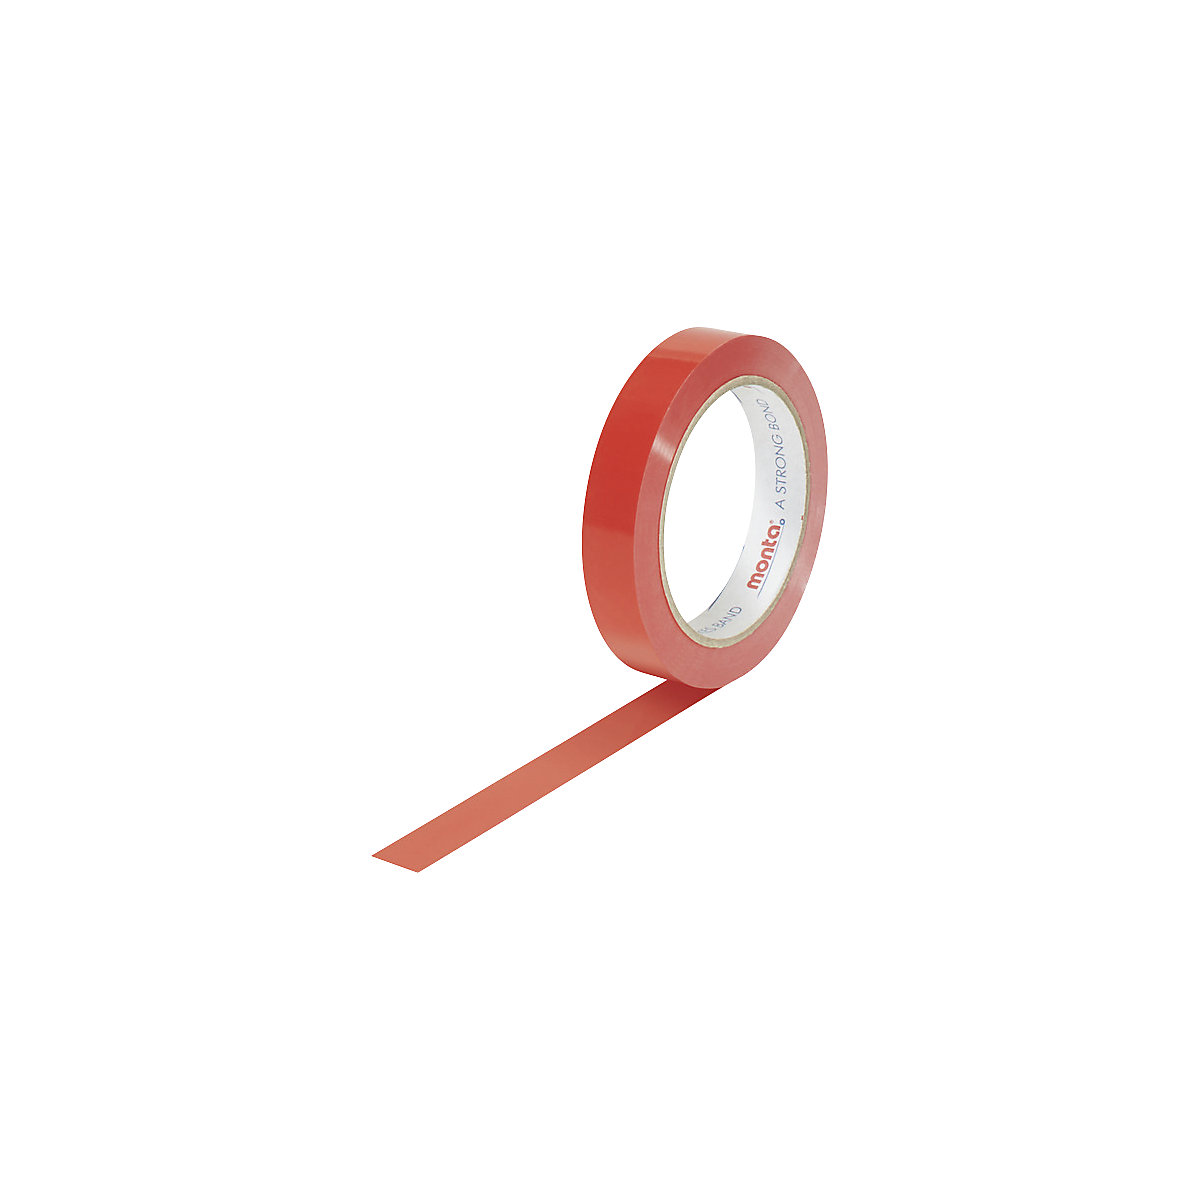 Nastro adesivo, in PVC, colorato, conf. da 6 rotoli, rosso, larghezza nastro 19 mm, a partire da 6 conf.-1